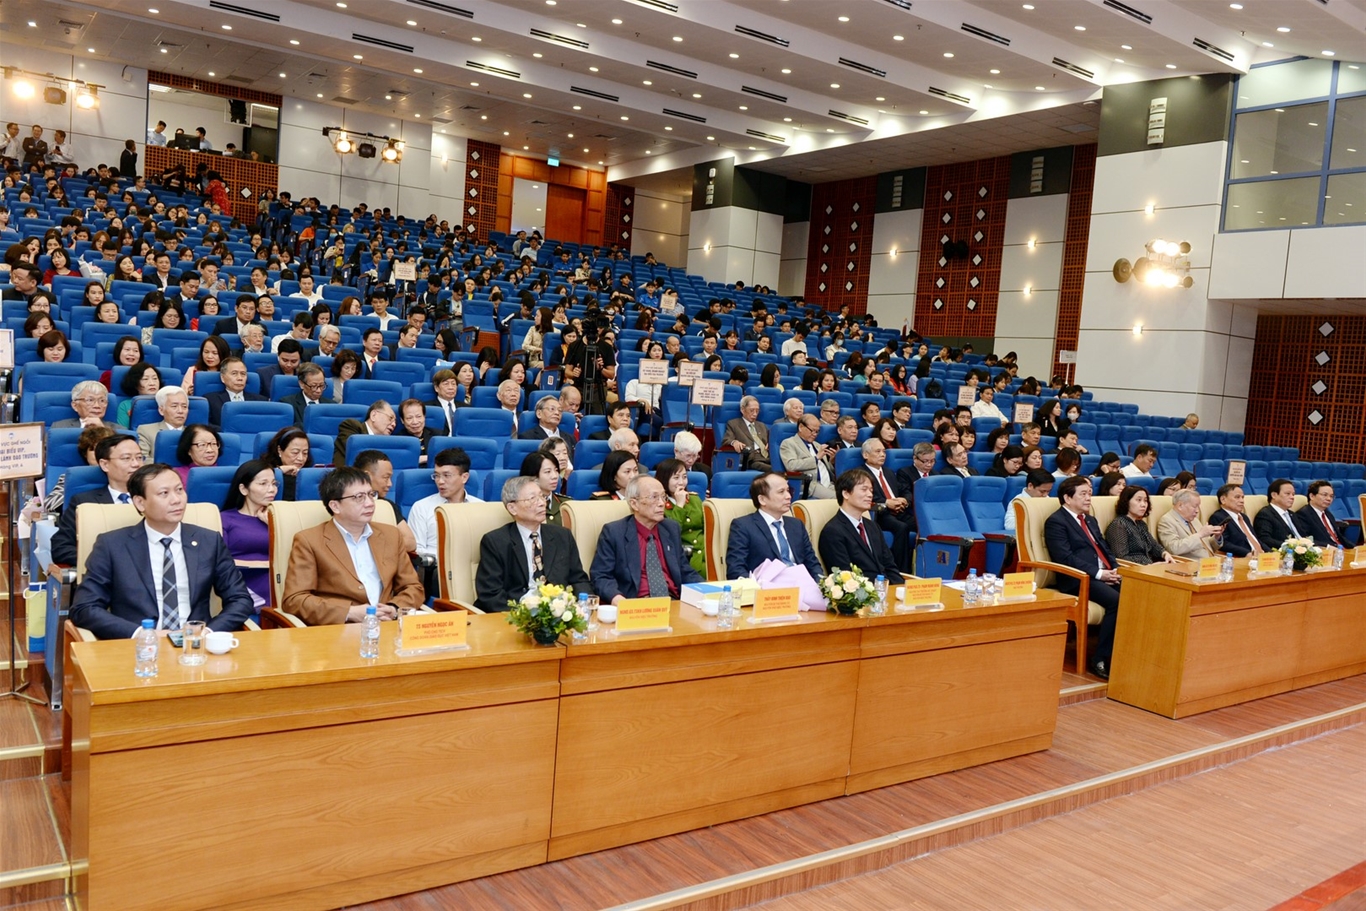 Trường Đại học Kinh tế Quốc dân tổ chức chuỗi sự kiện nhân dịp kỷ niệm 38 năm Ngày Nhà giáo Việt Nam (20/11/1982 - 20/11/2020)